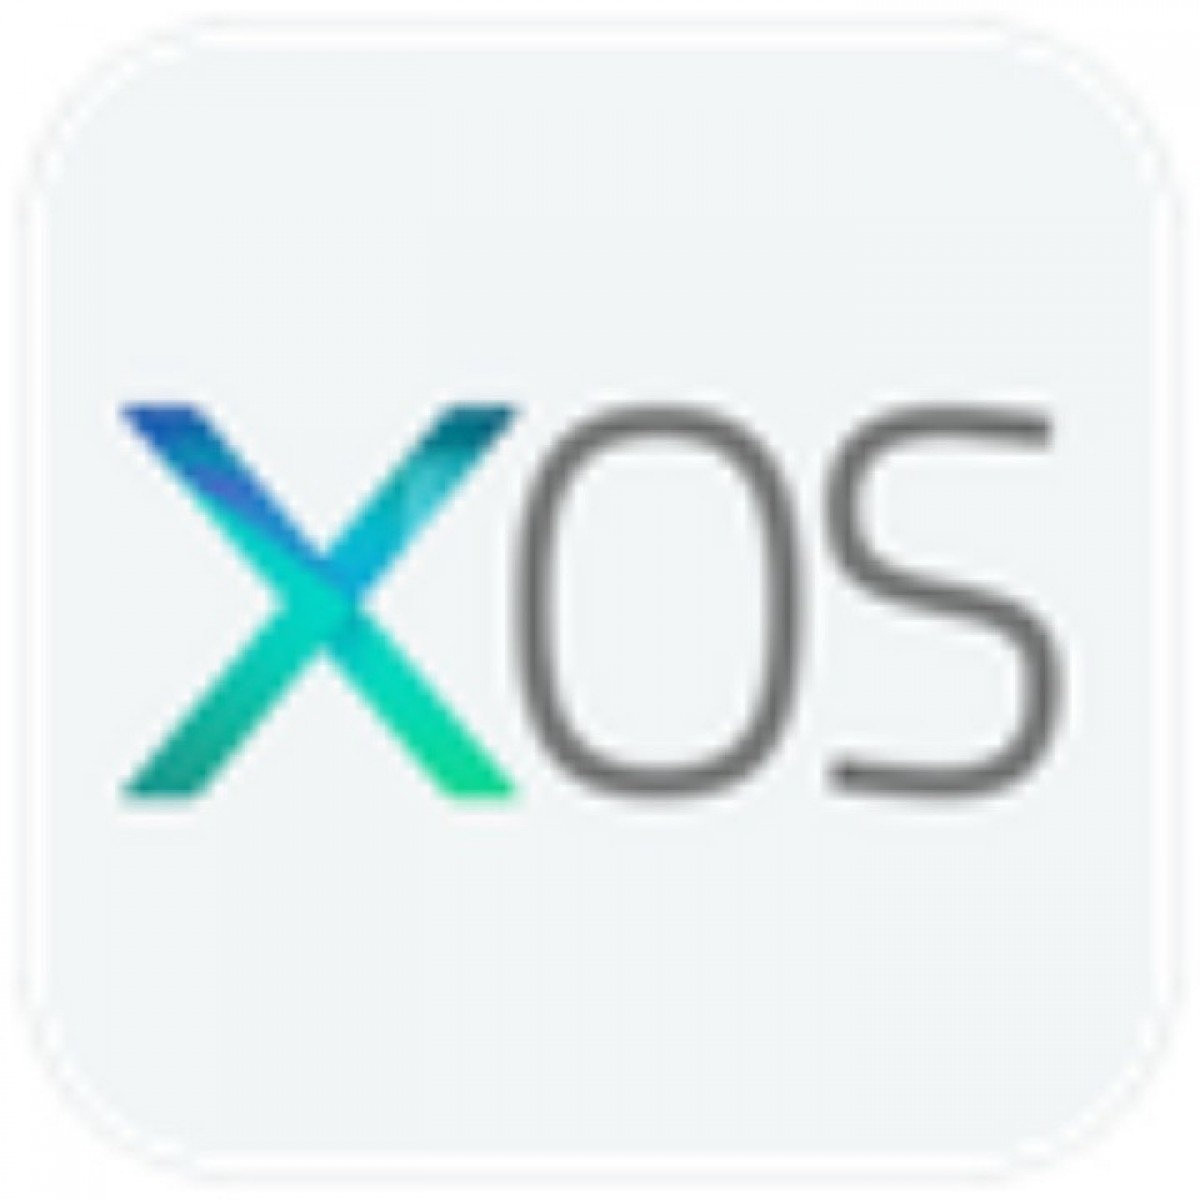 Xos Logo - HD Wallpaper 